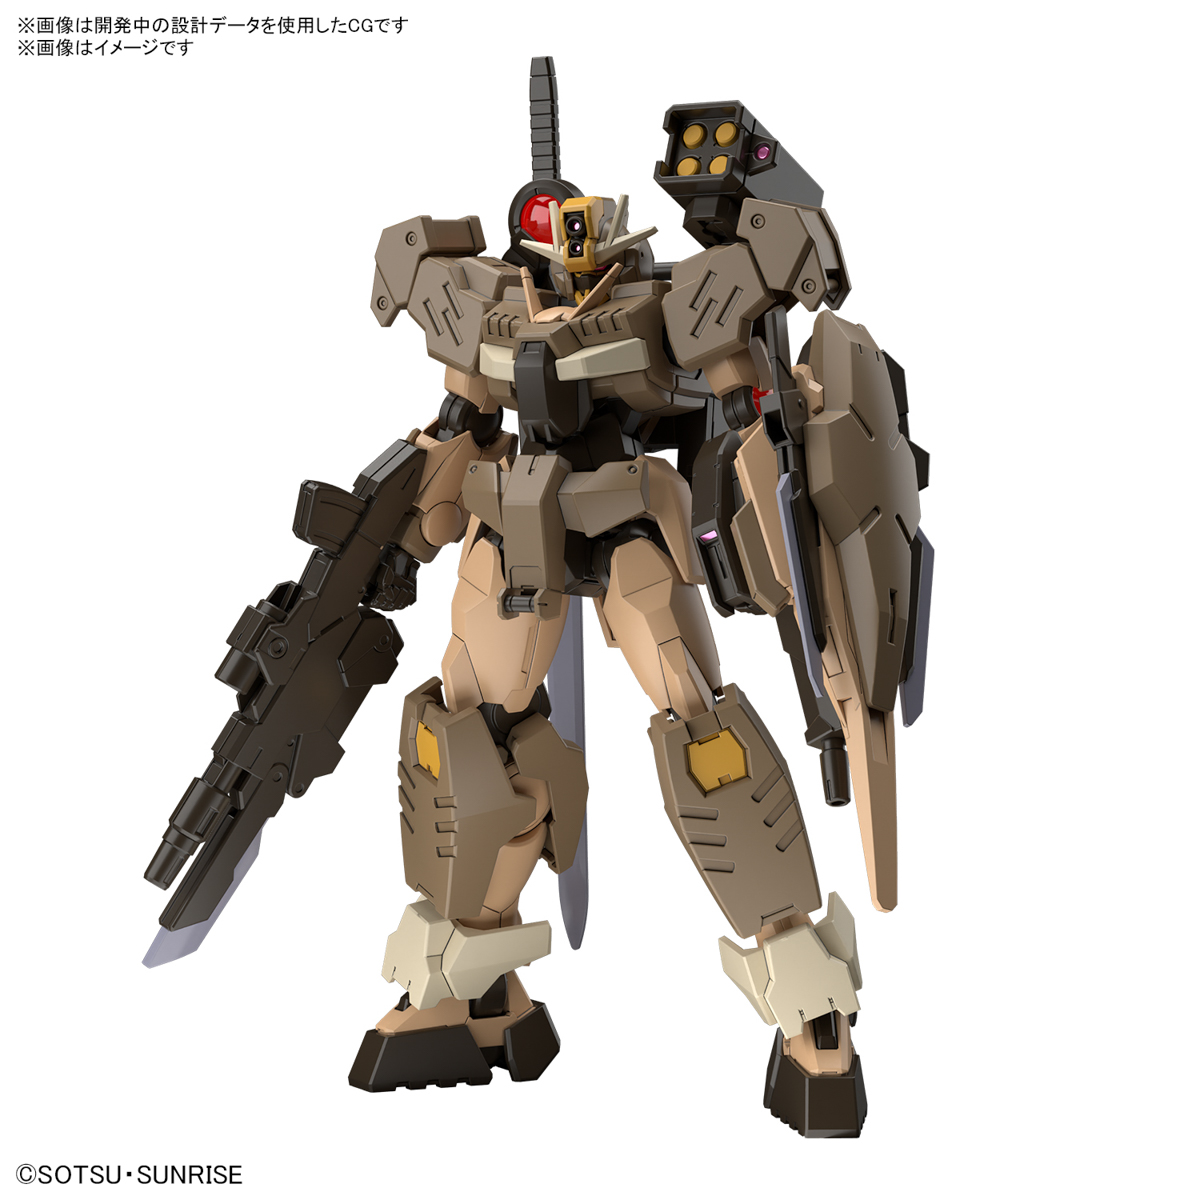 HGBM 1/144 Gundam 00 Command Qan[T] Desert Type - 01